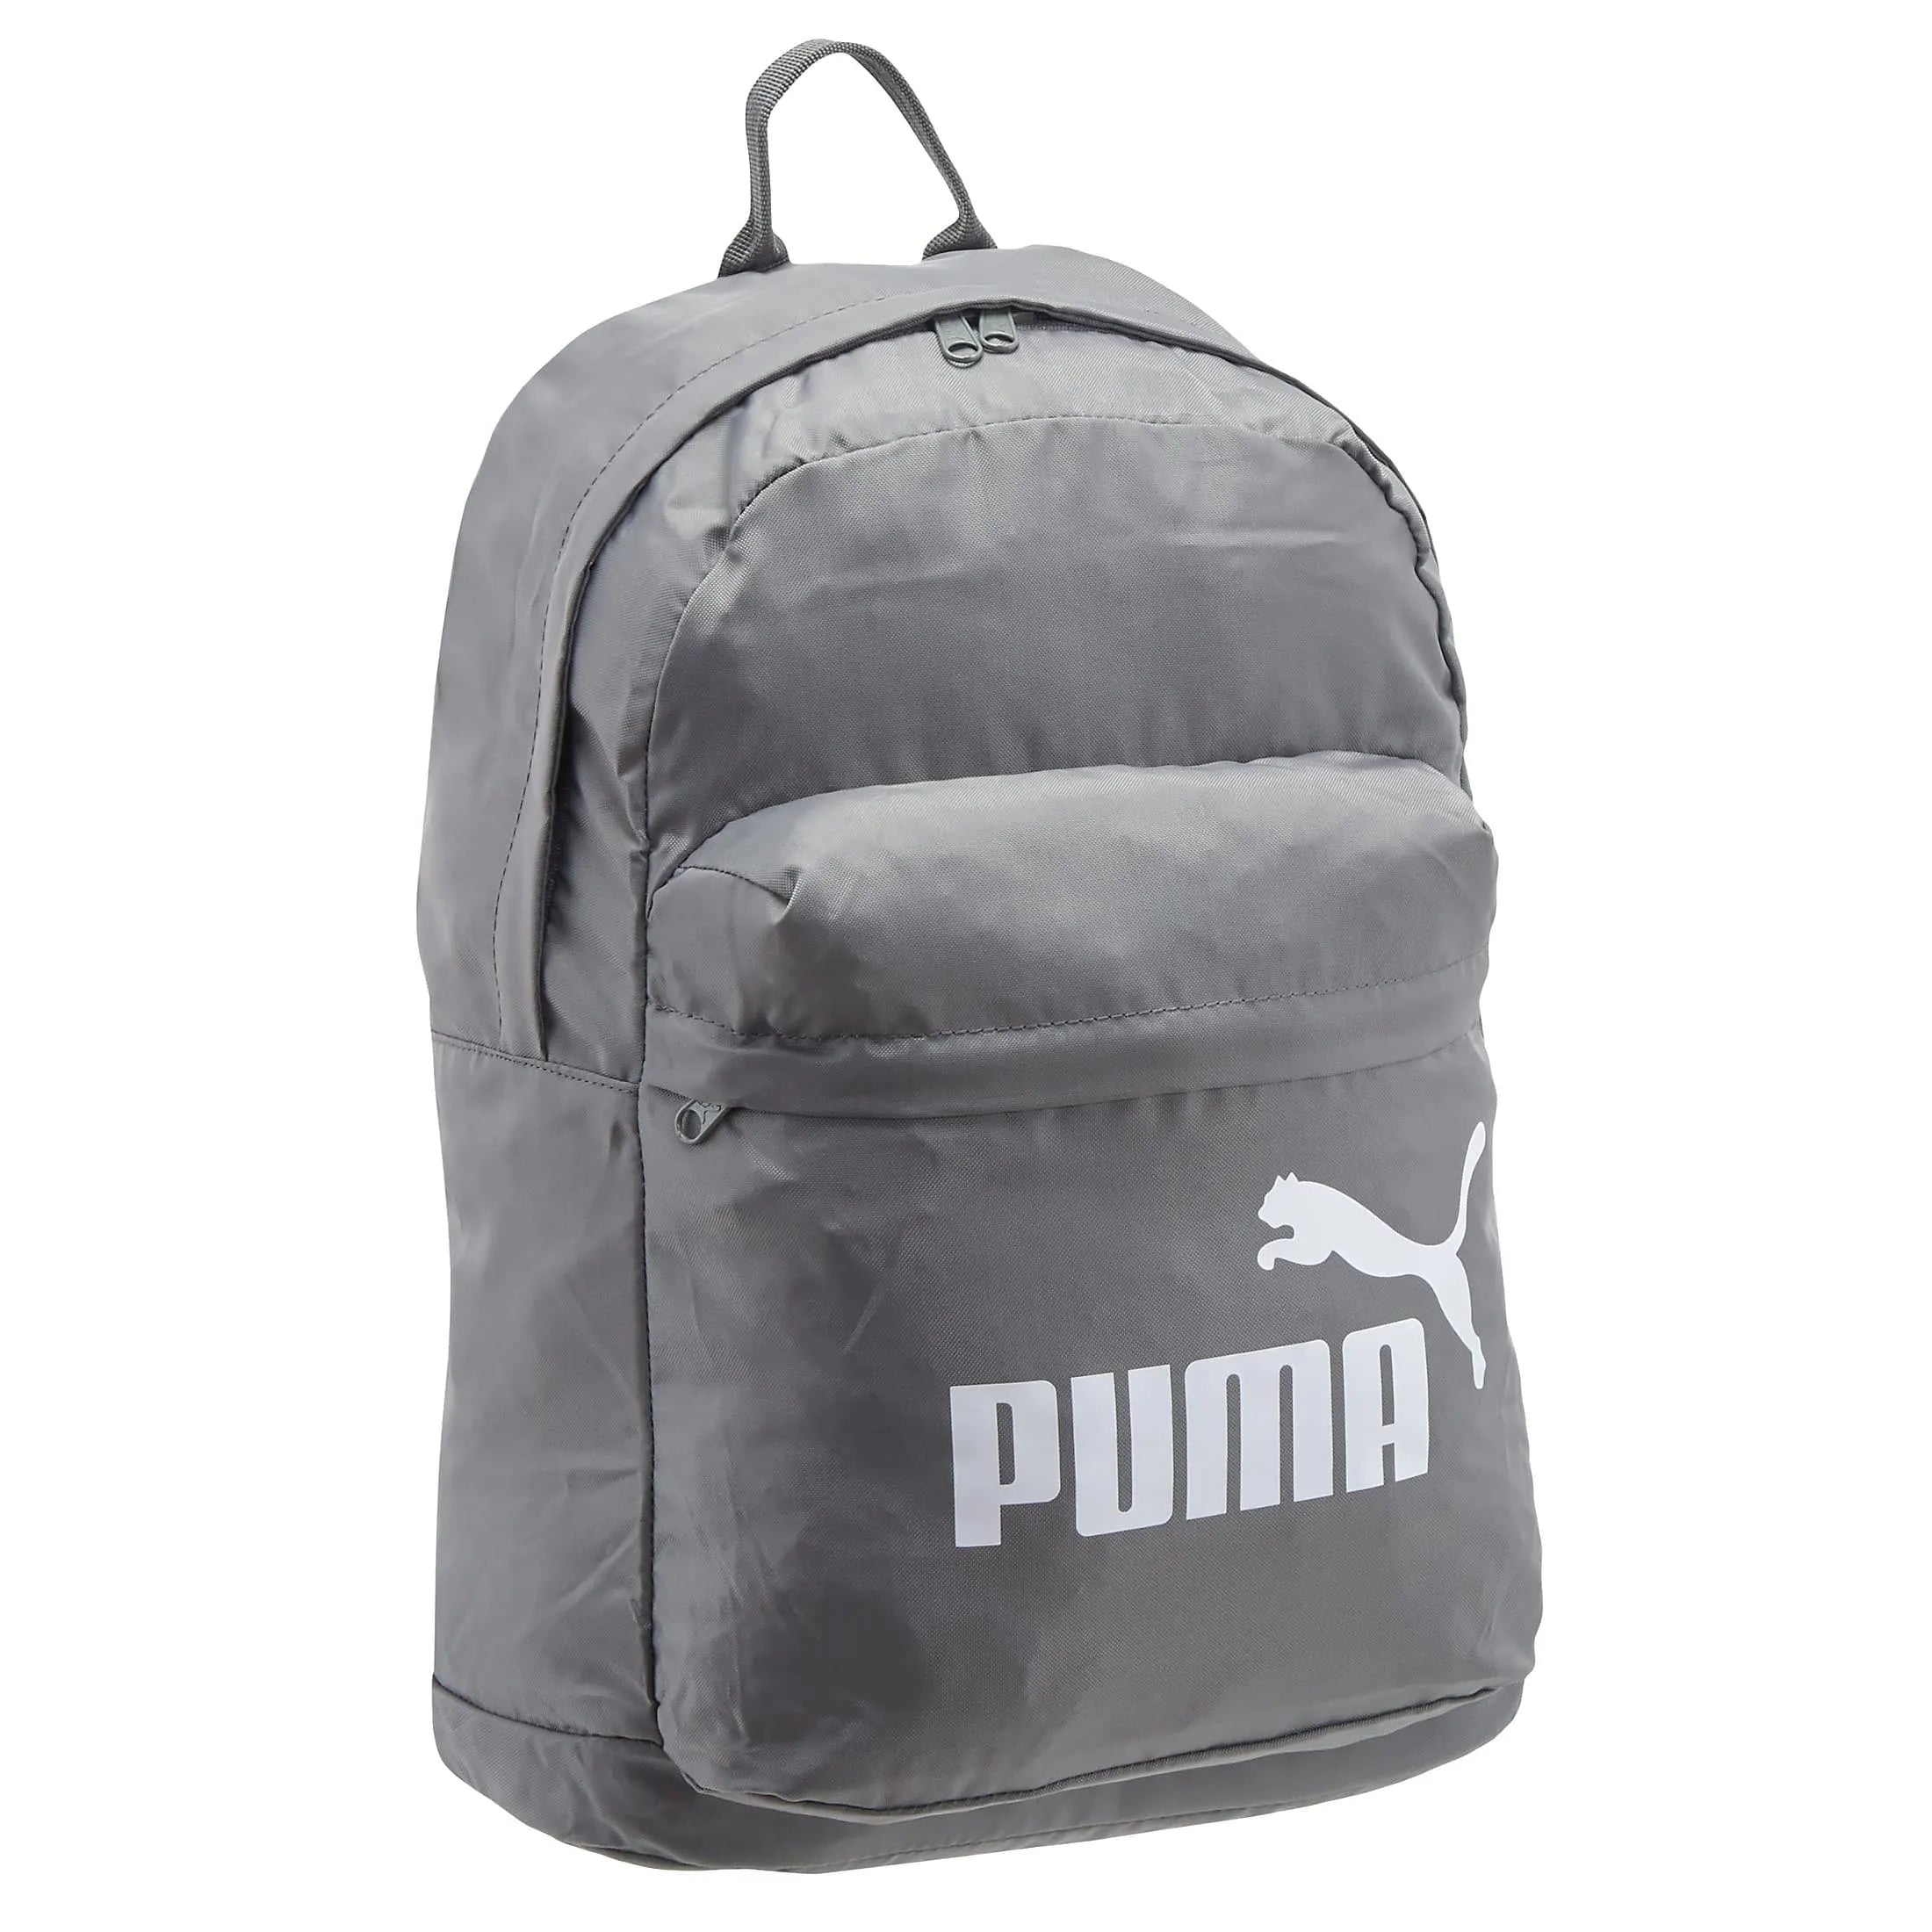 Puma Sports Classic Sac à dos 43 cm - gris anthracite